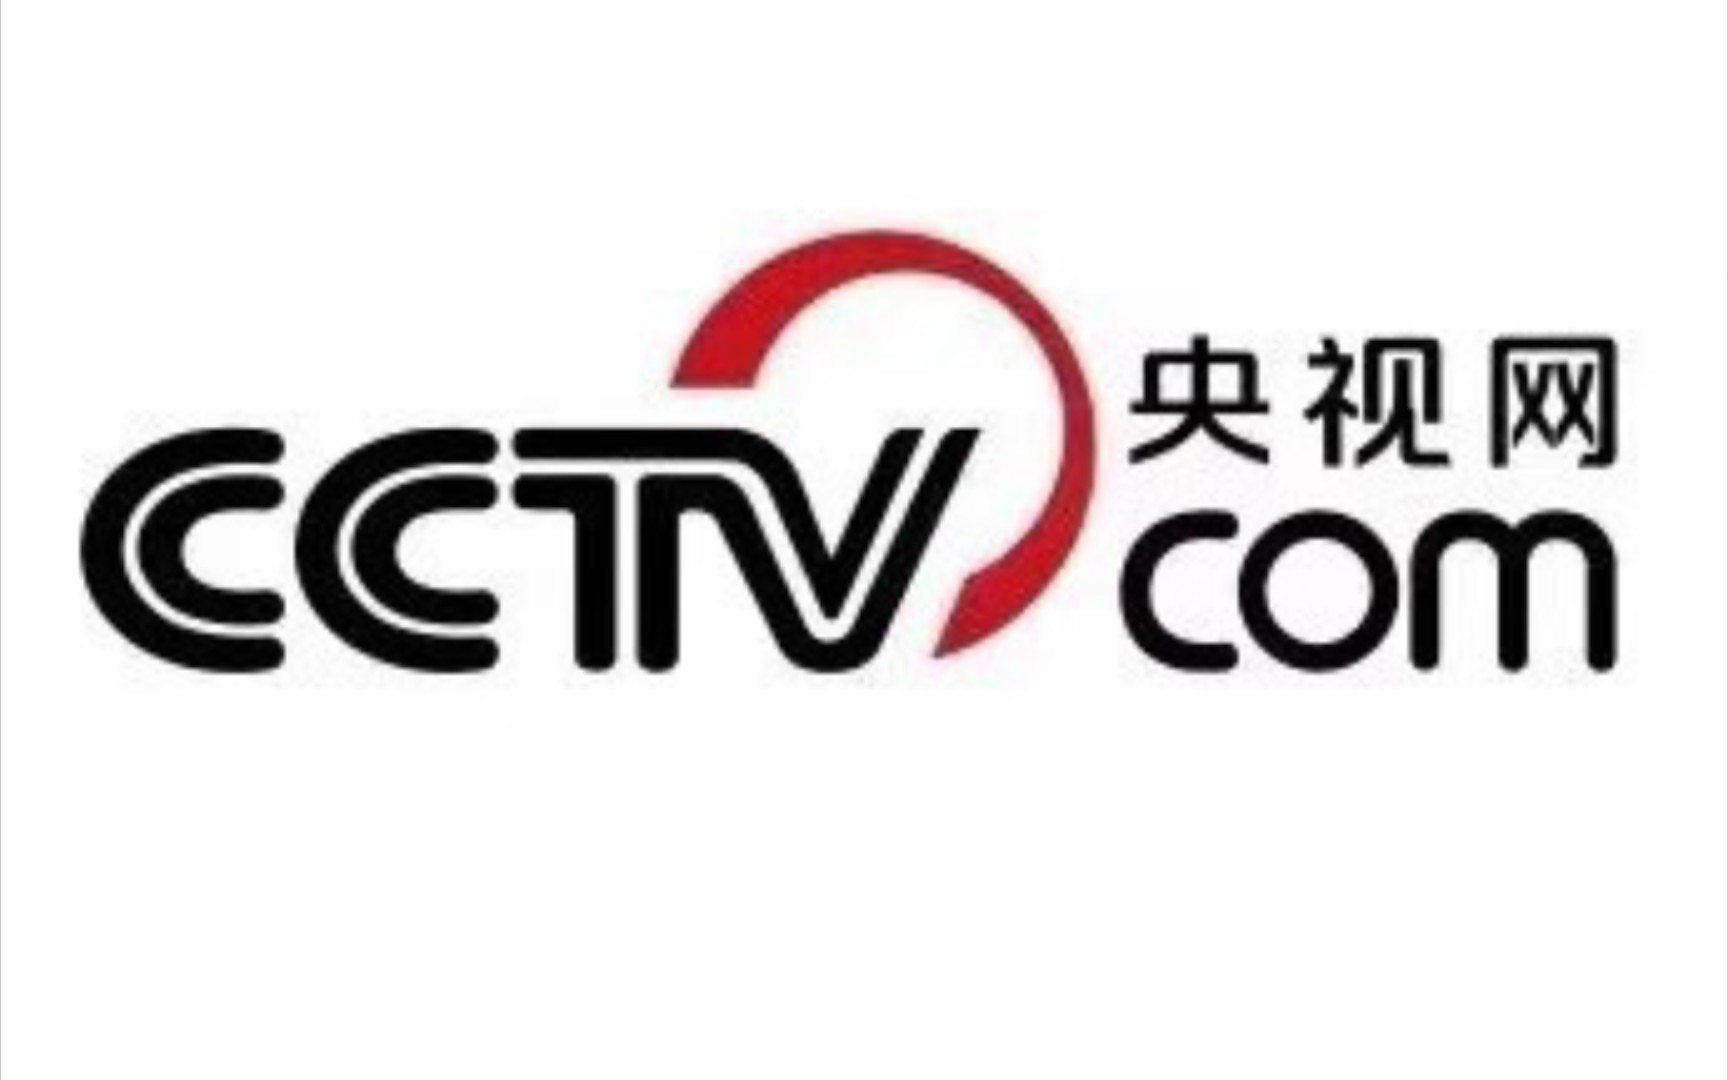 央视批评大logo图片